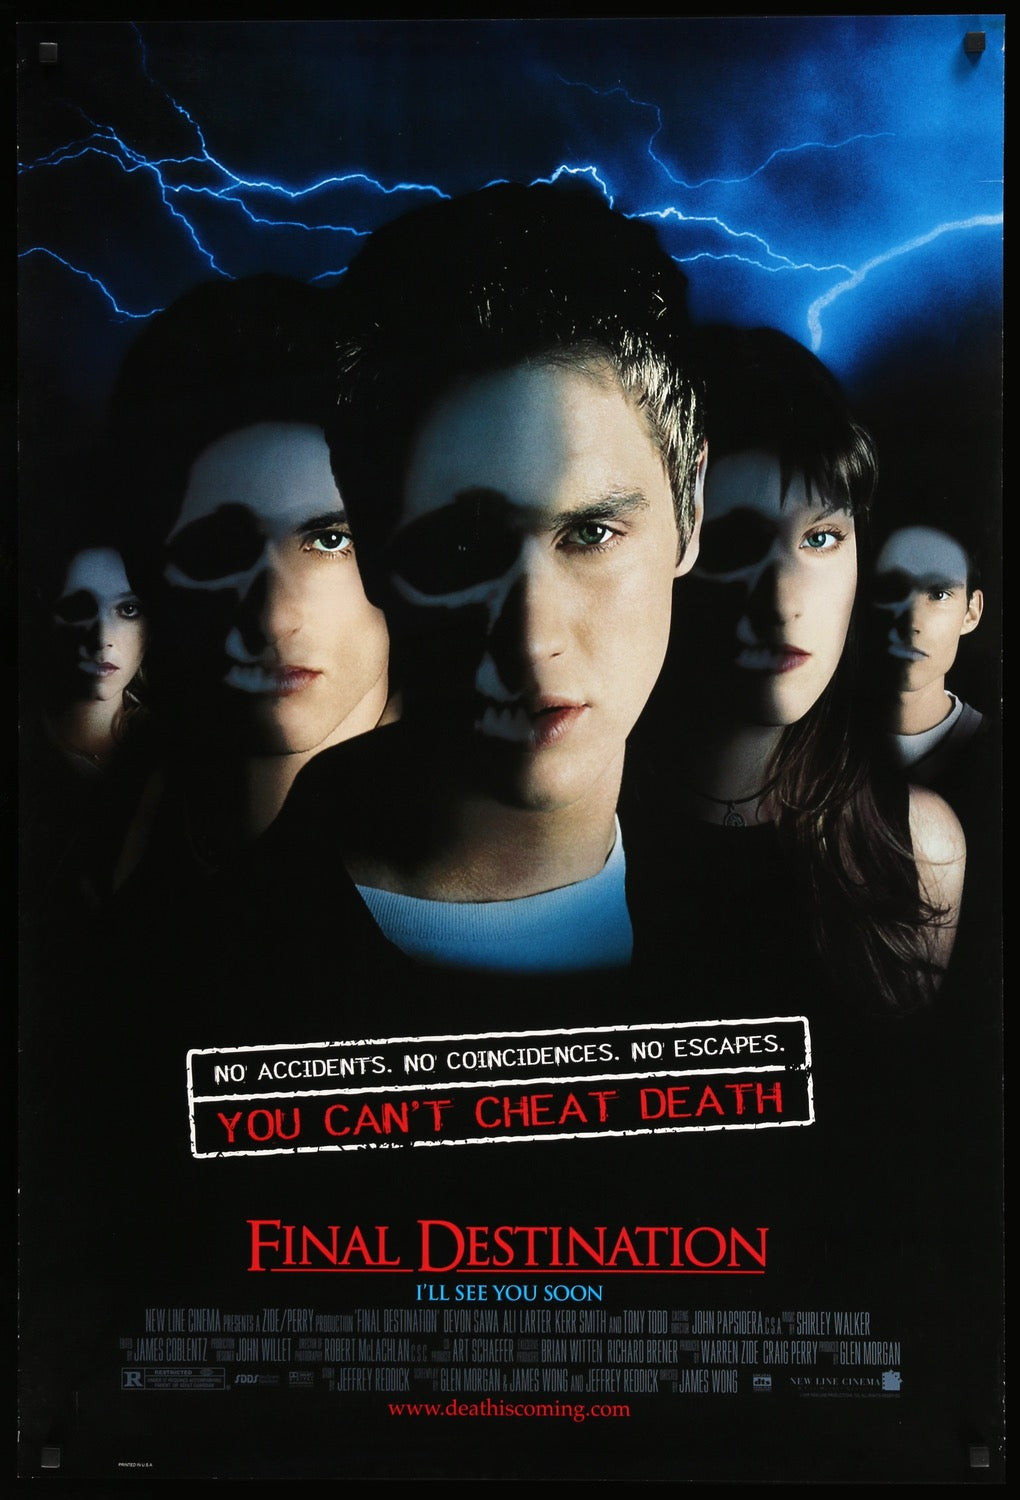 Final Destination (2000) original movie poster for sale at Original Film Art